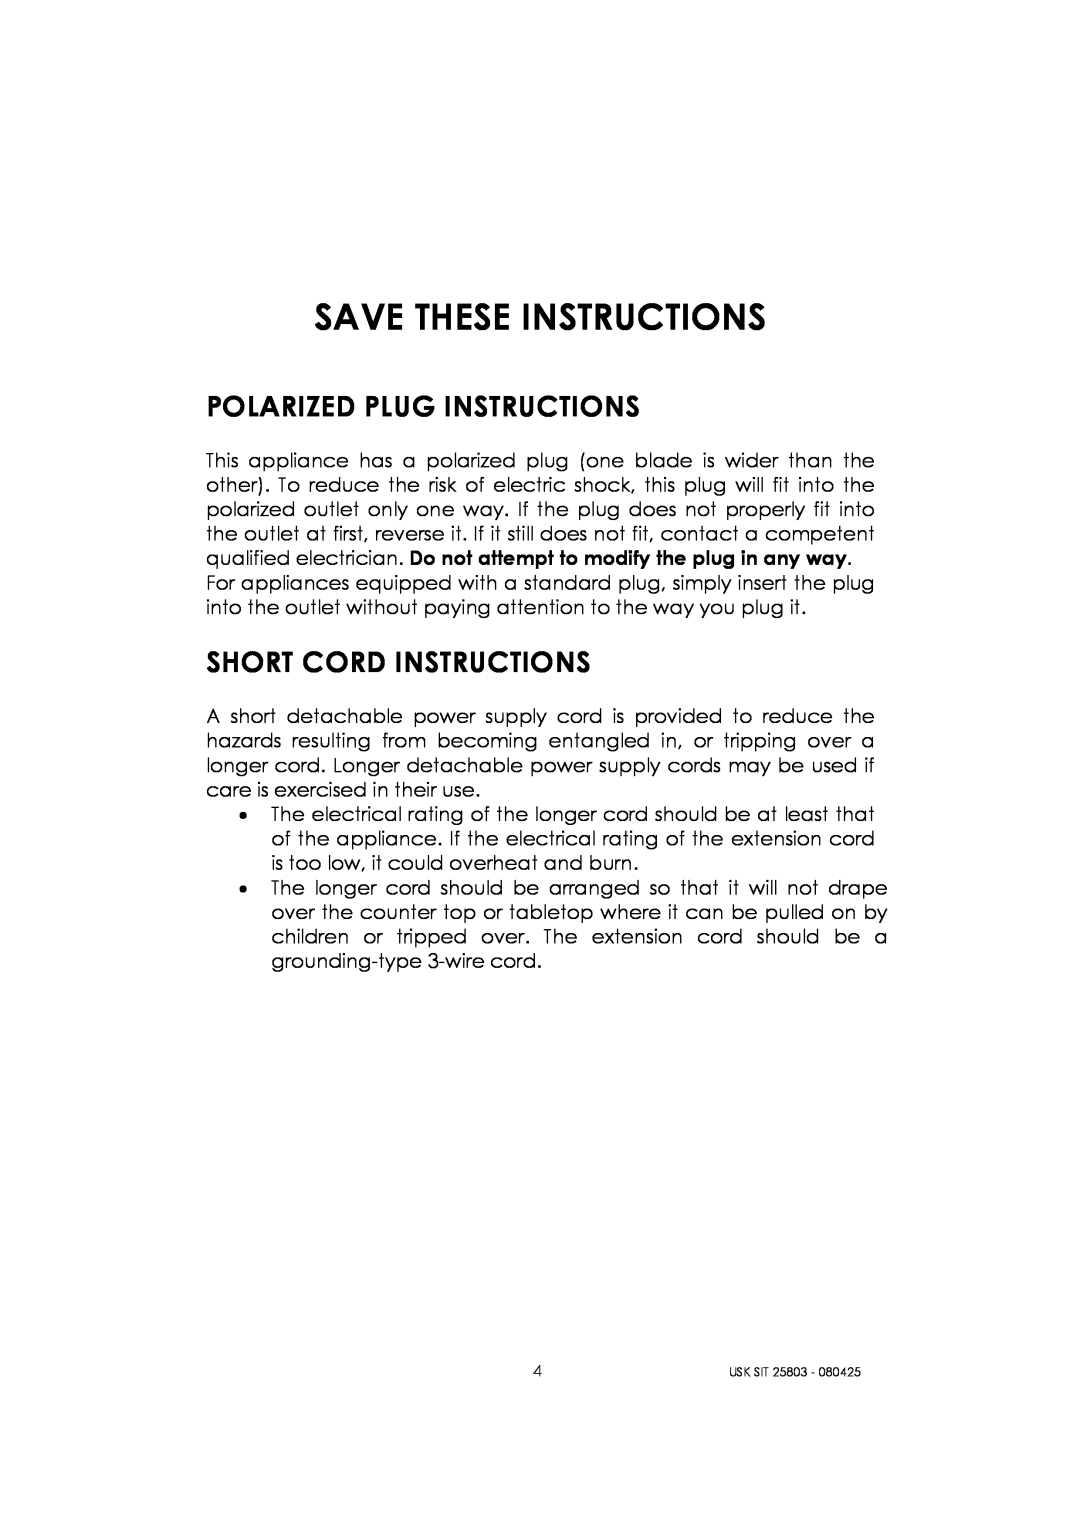 Kalorik USK SIT 25803 manual Save These Instructions, Polarized Plug Instructions, Short Cord Instructions 